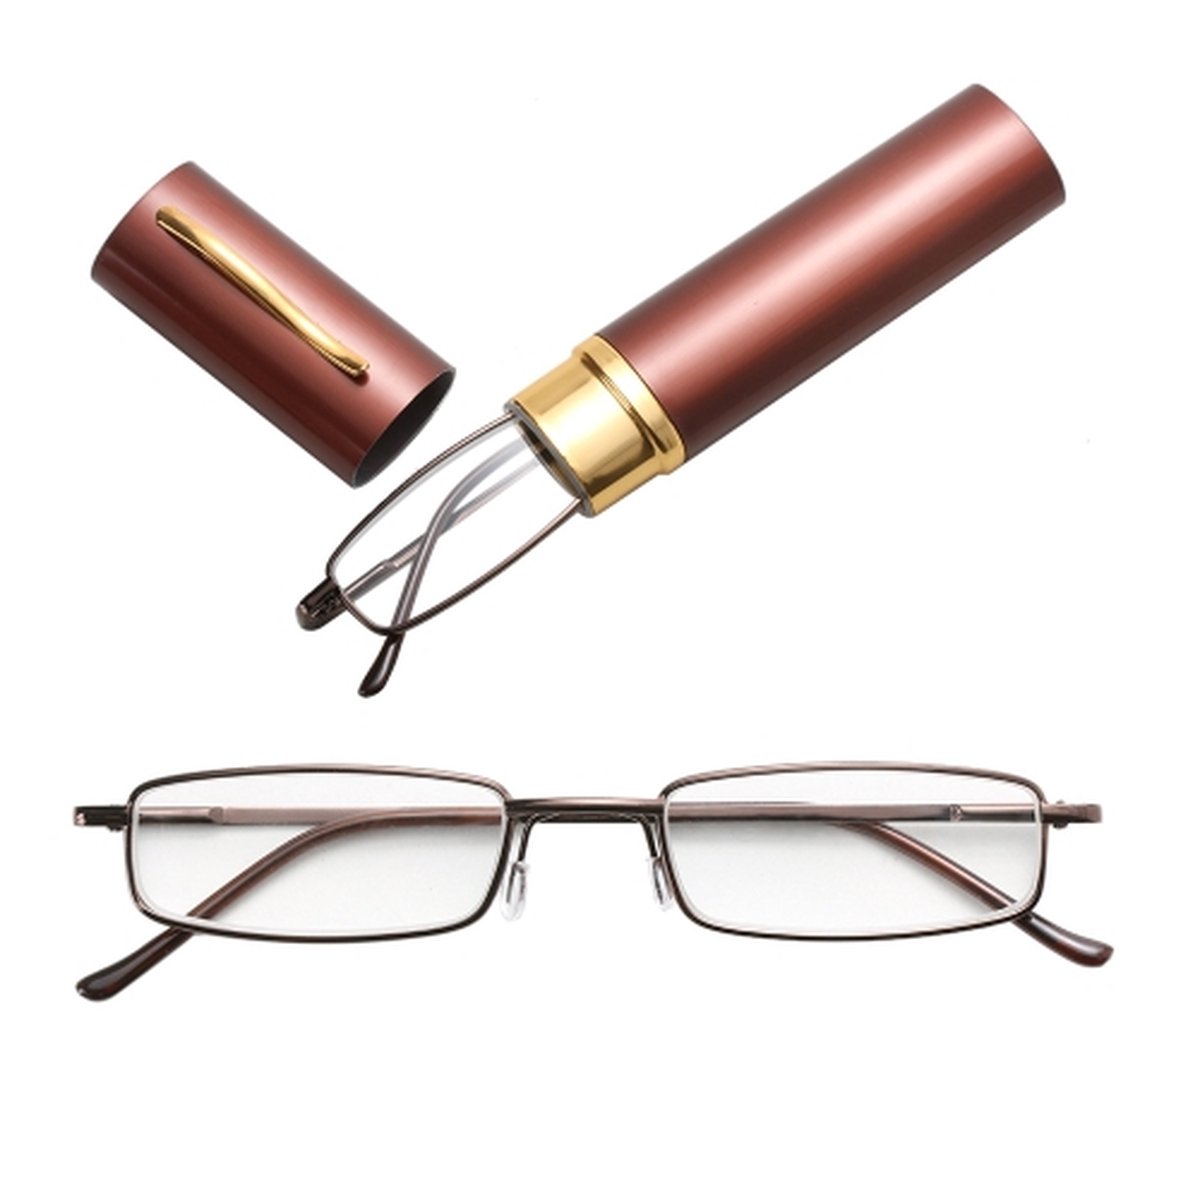 Leesbril Metalen veervoet Draagbare verziend bril met buiskoker + 1.00D (bruin)